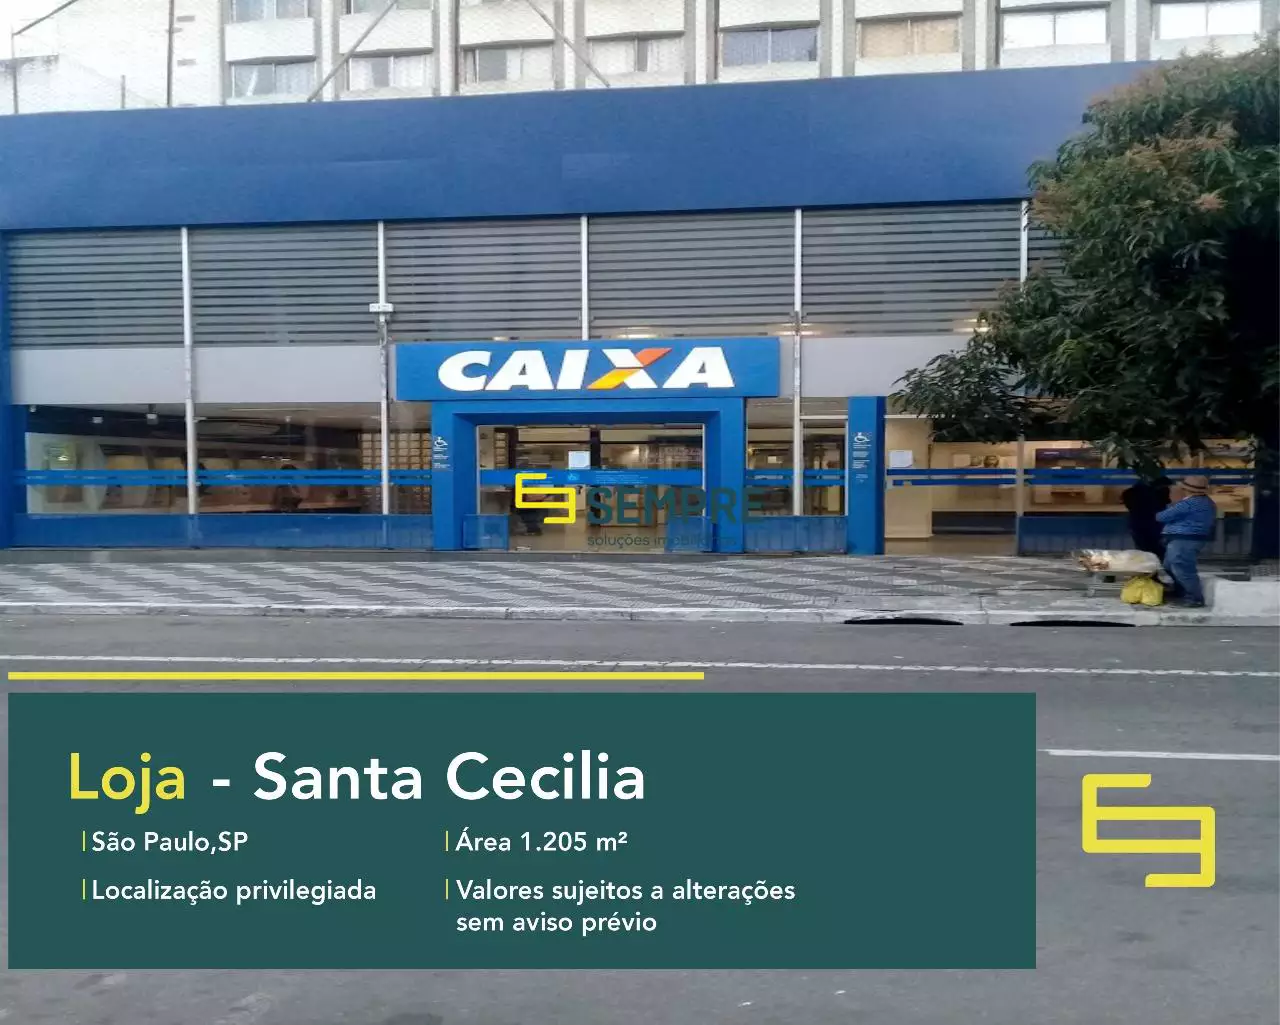 Loja para vender no Santa Cecilia em São Paulo, excelente localização. O estabelecimento comercial conta com área de 1.205,86 m².